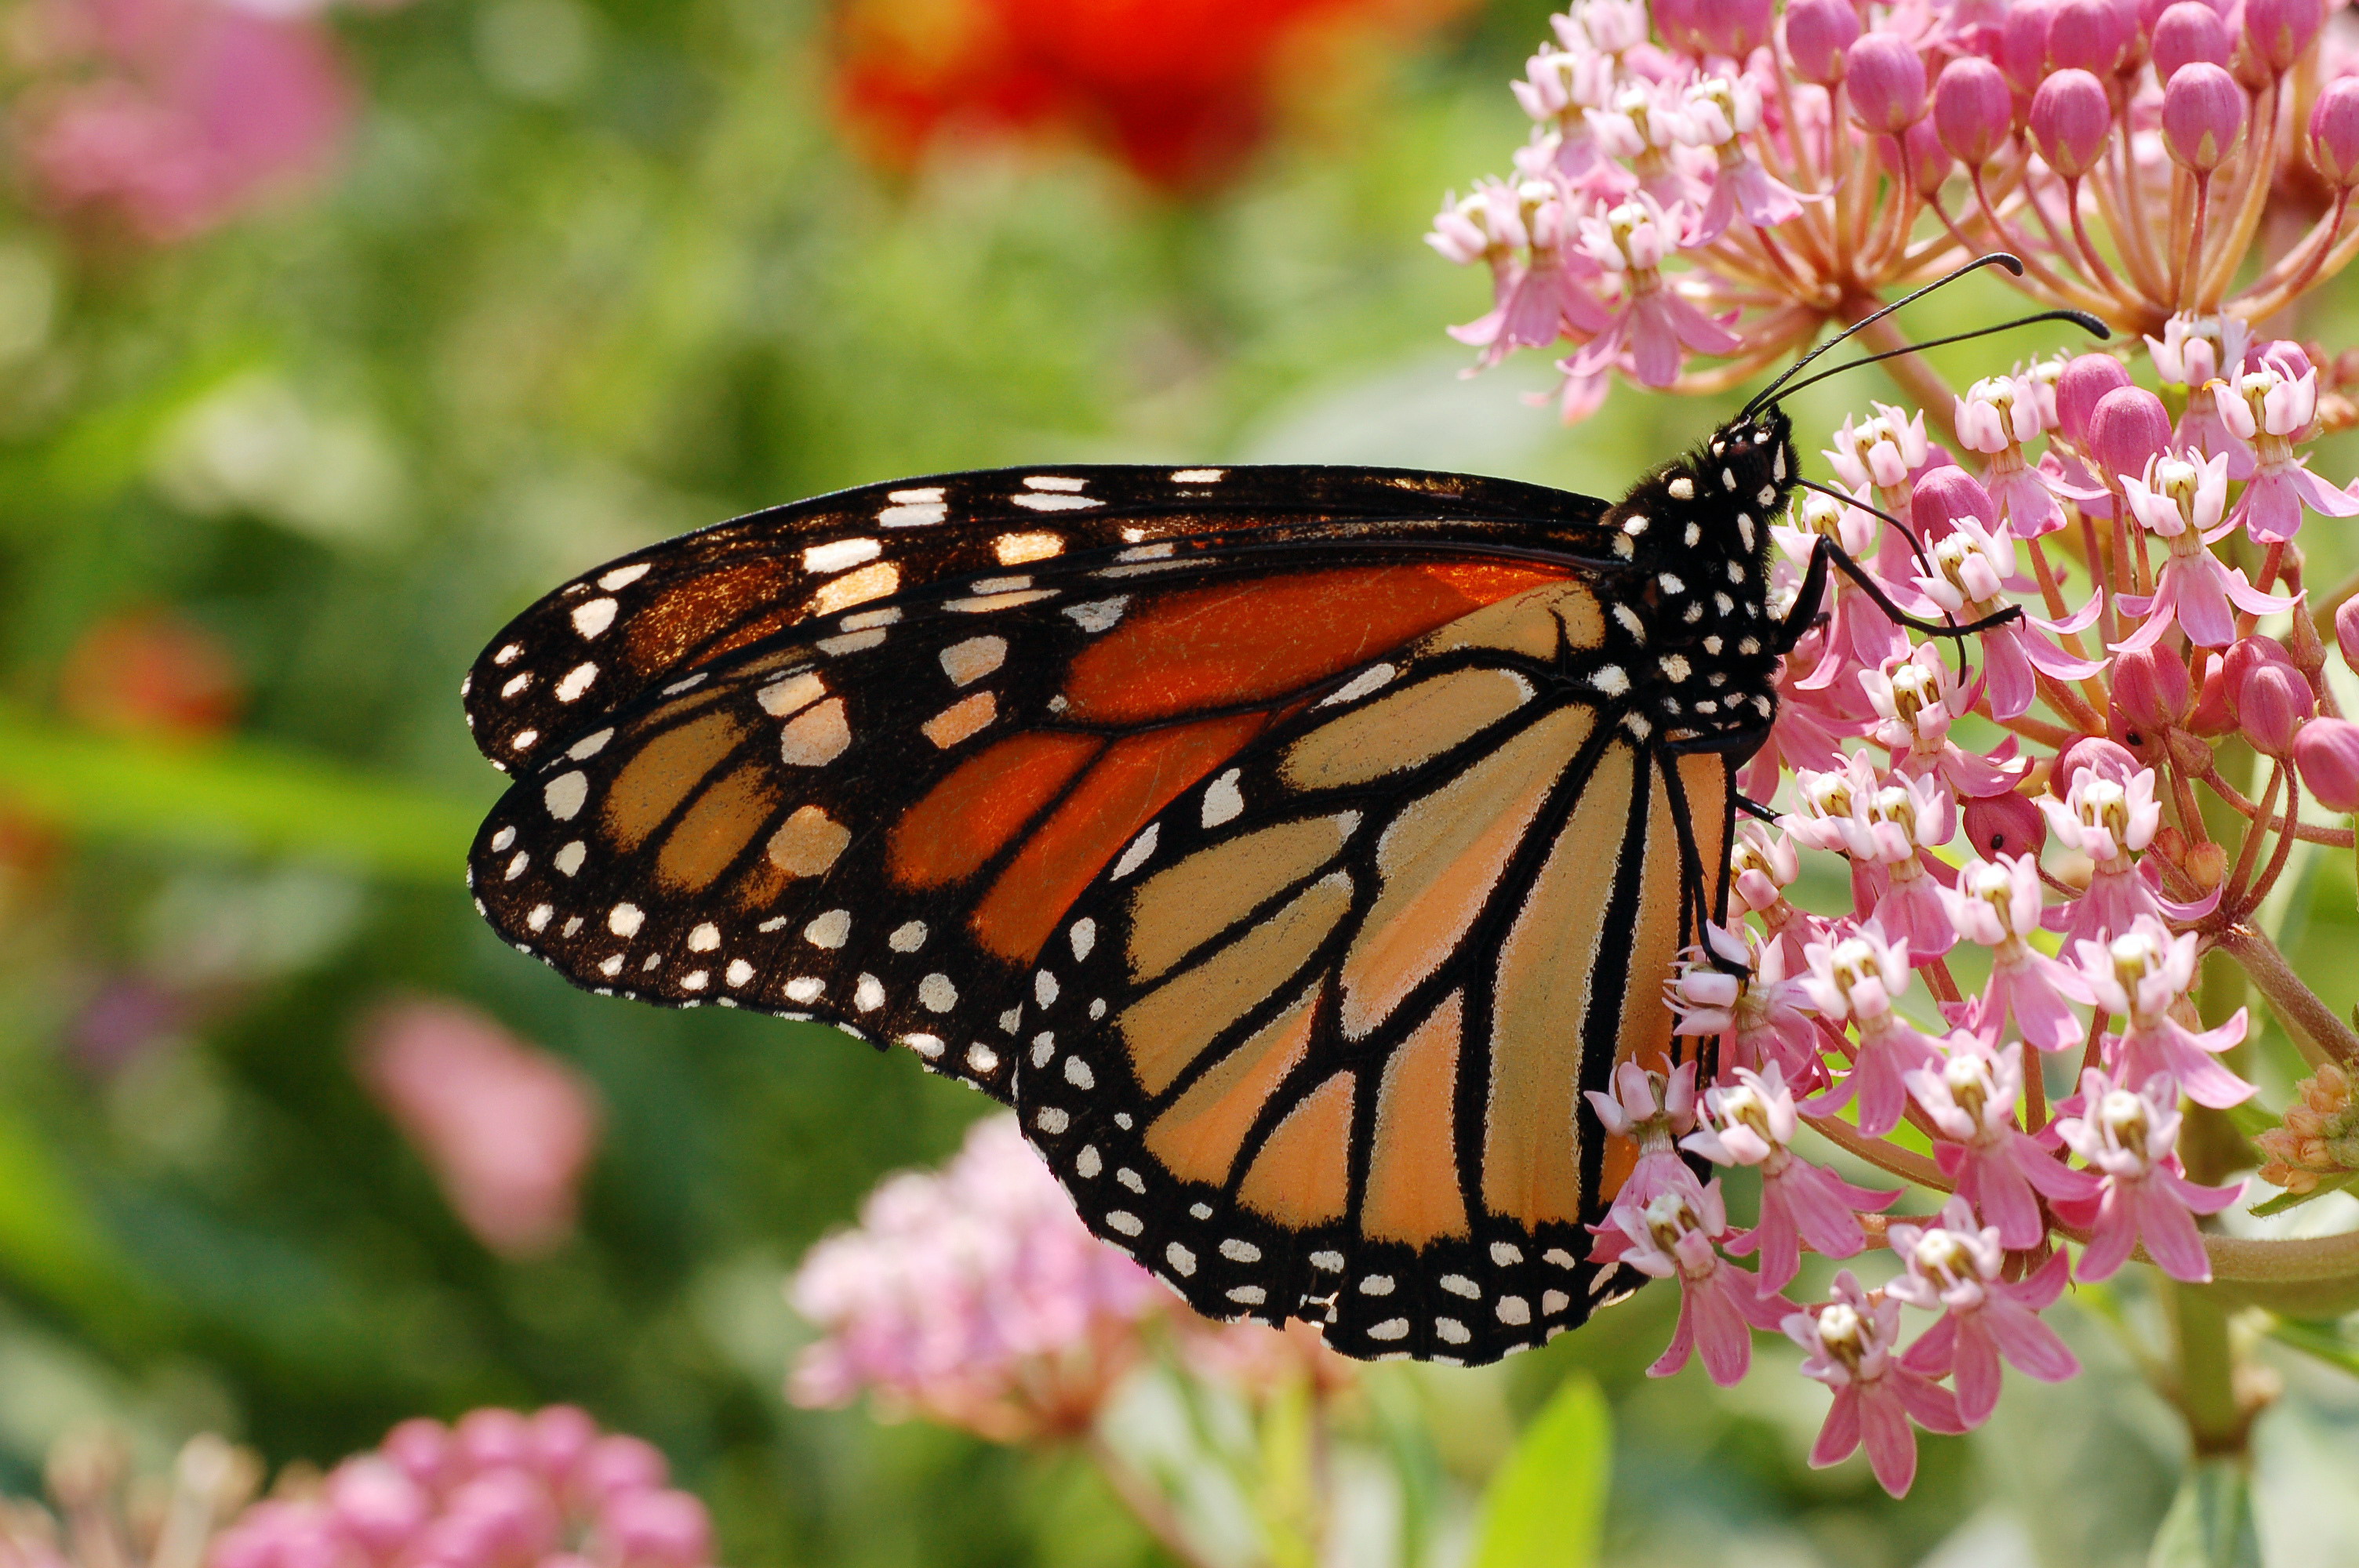 Tapety na pulpit Monarch, danaid Motyle insekty Zwierzęta danaus plexippus Owady motyl zwierzę